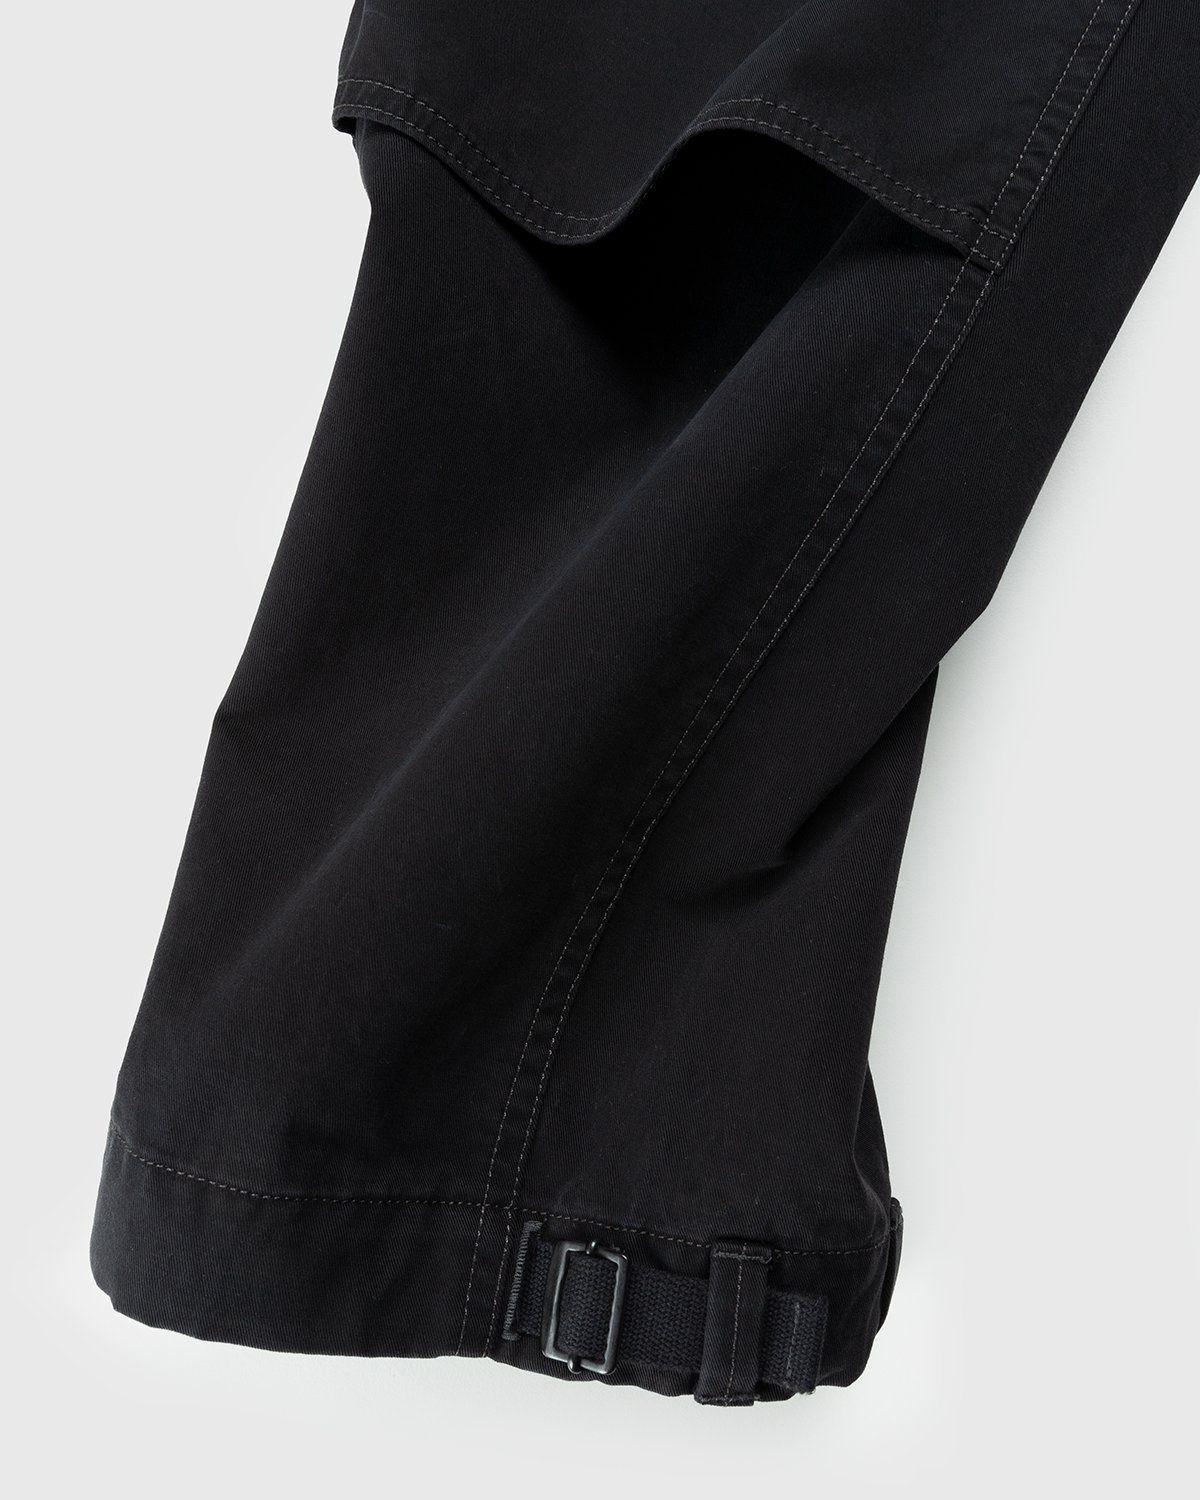 Lemaire – Utility Pants Black - Pants - Black - Image 5